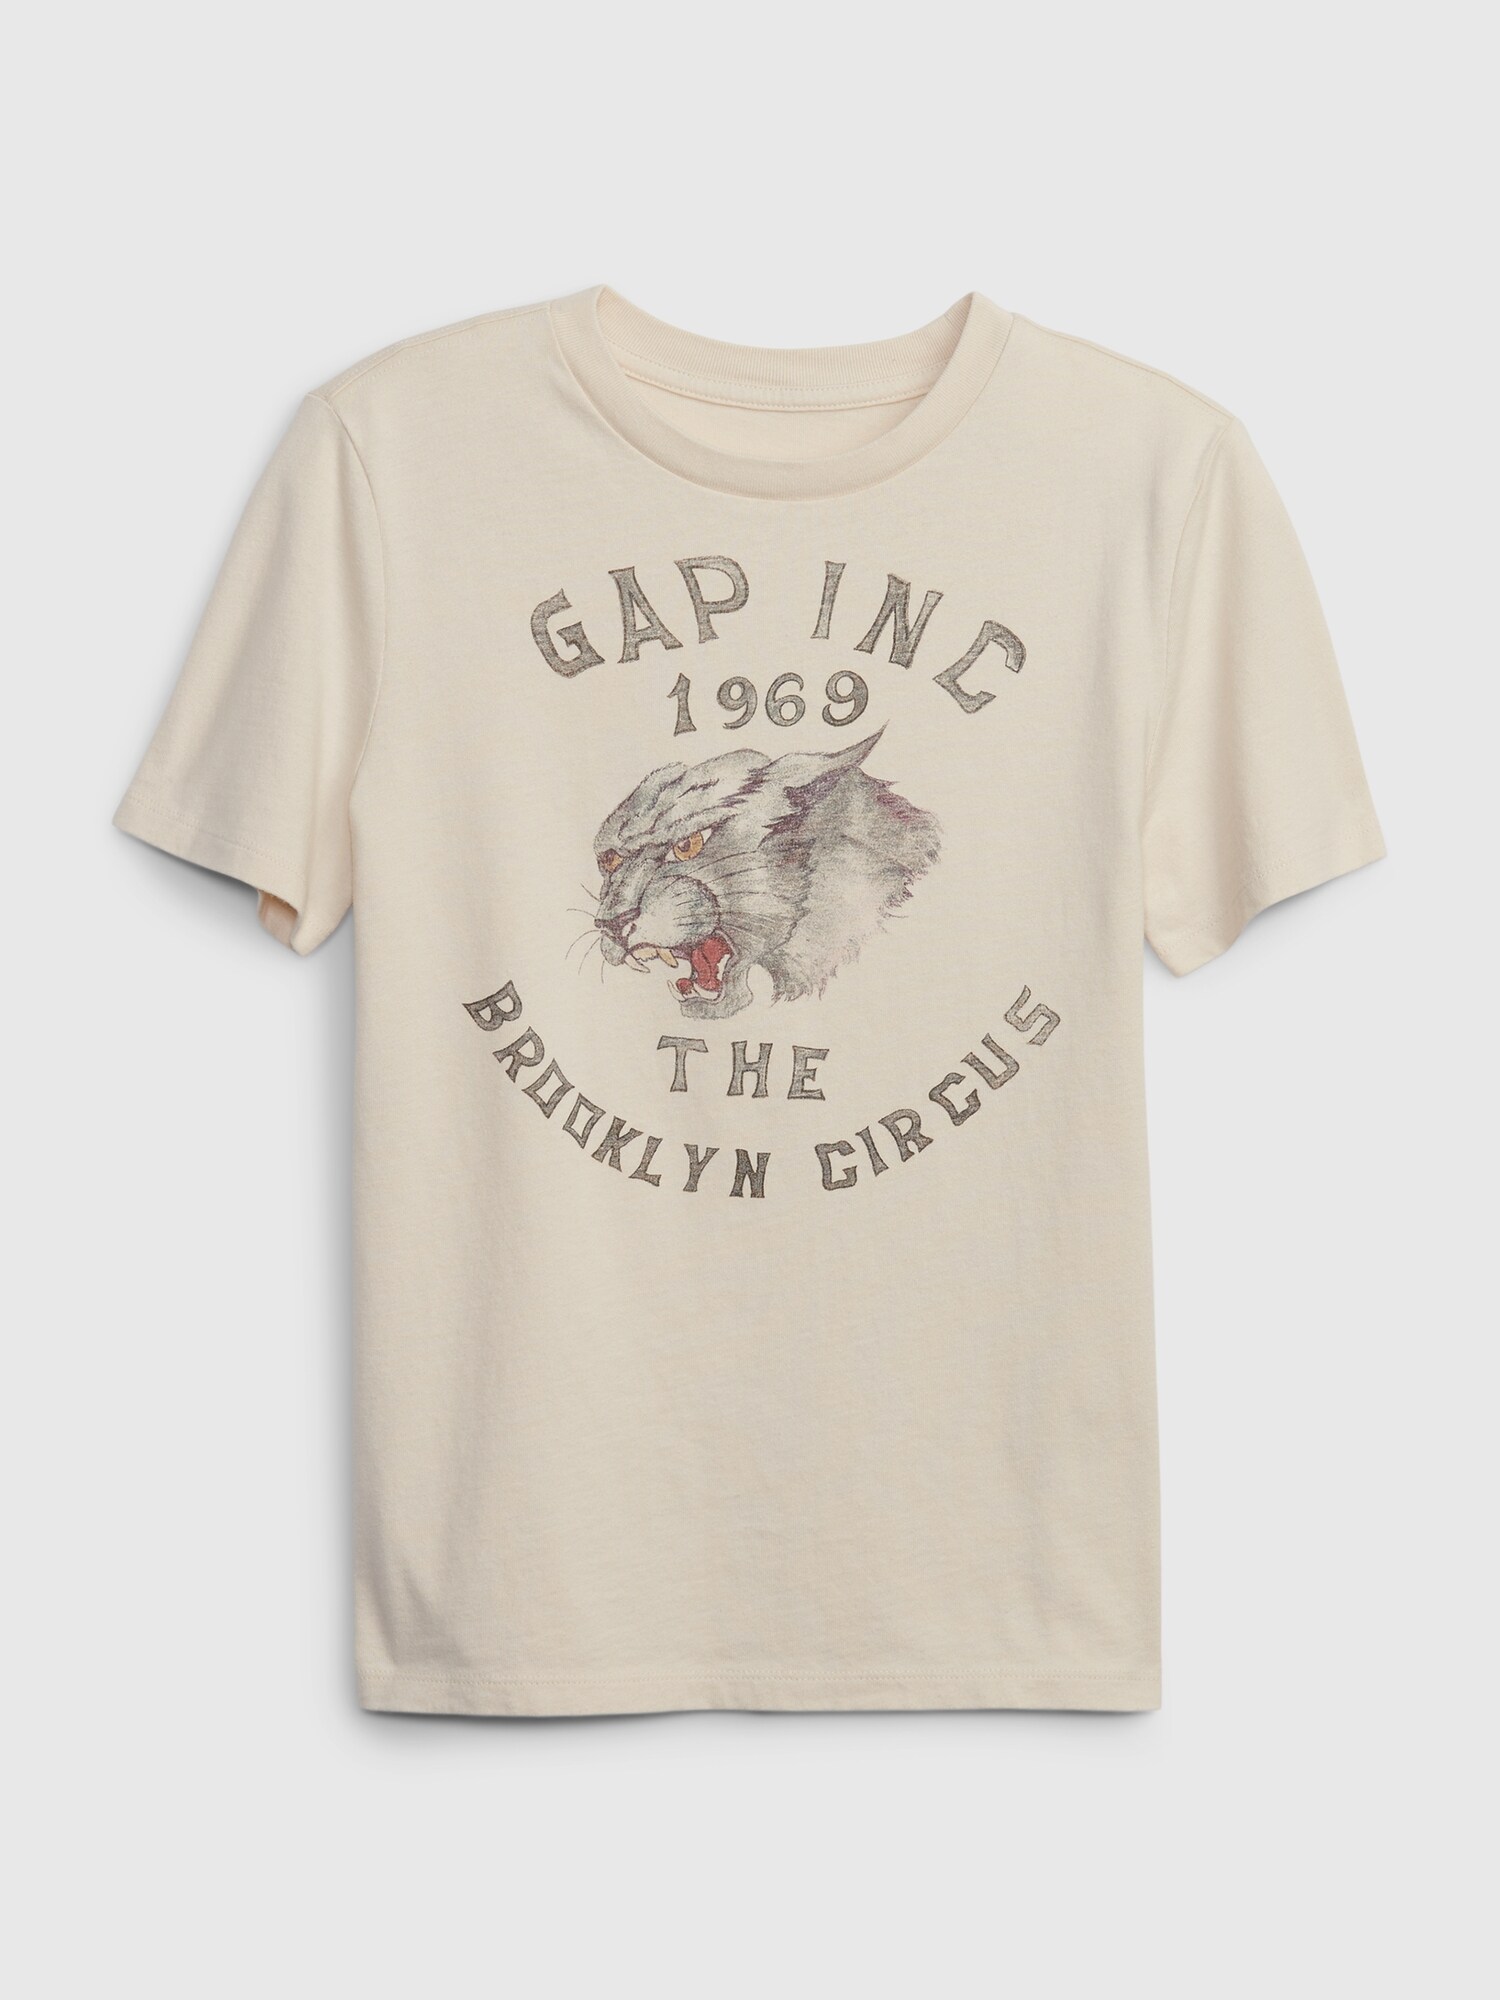 新品タグ付　Gap X THE BROOKLYN CIRCUS 限定 Tシャツ